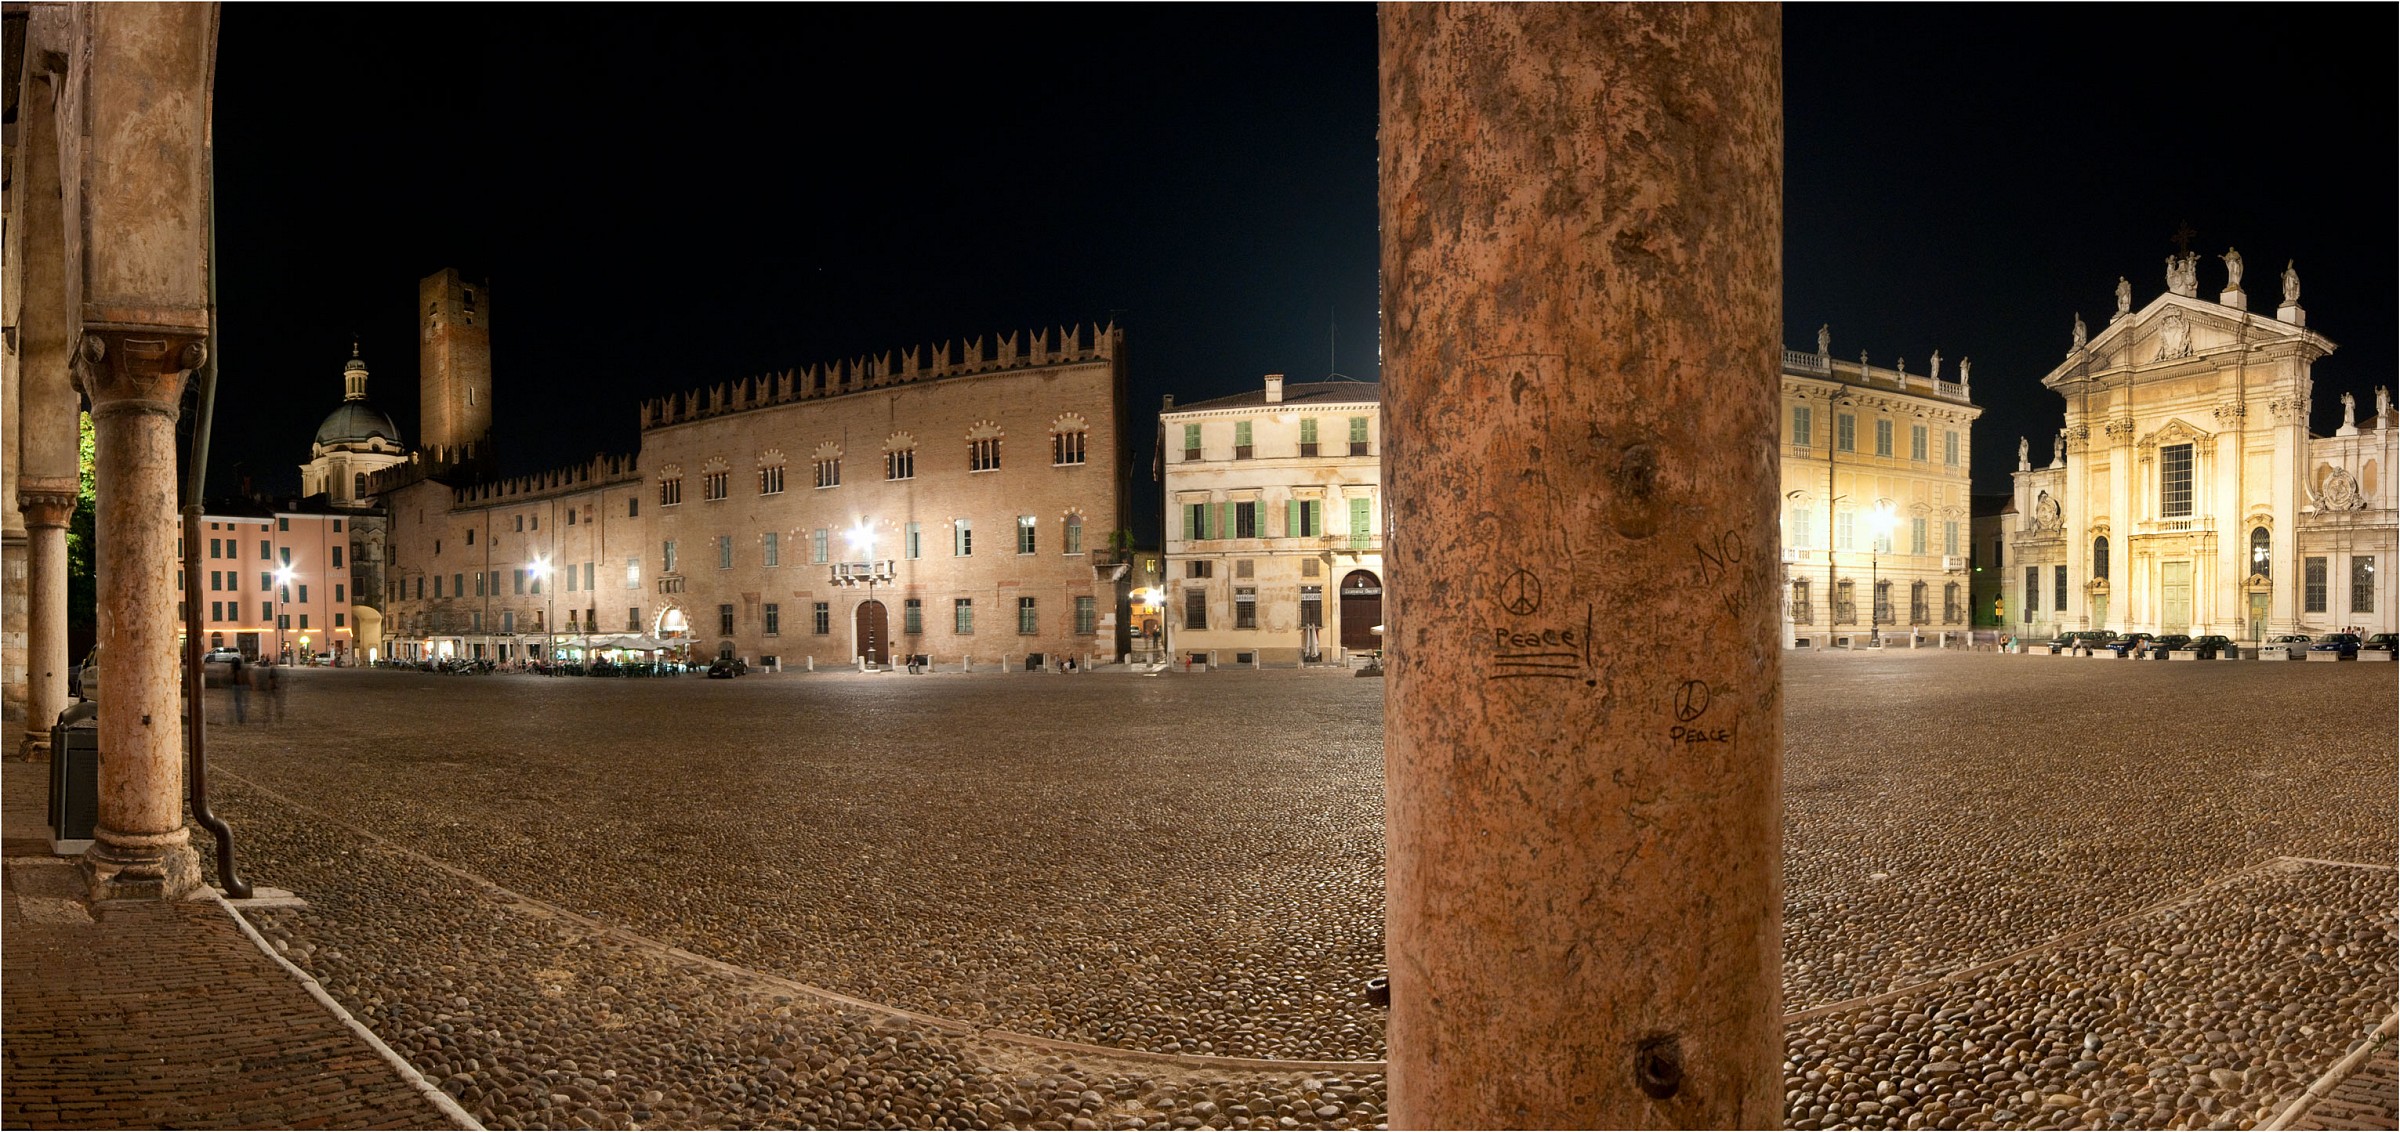 Mantova - Overview of Piazza Sordello...